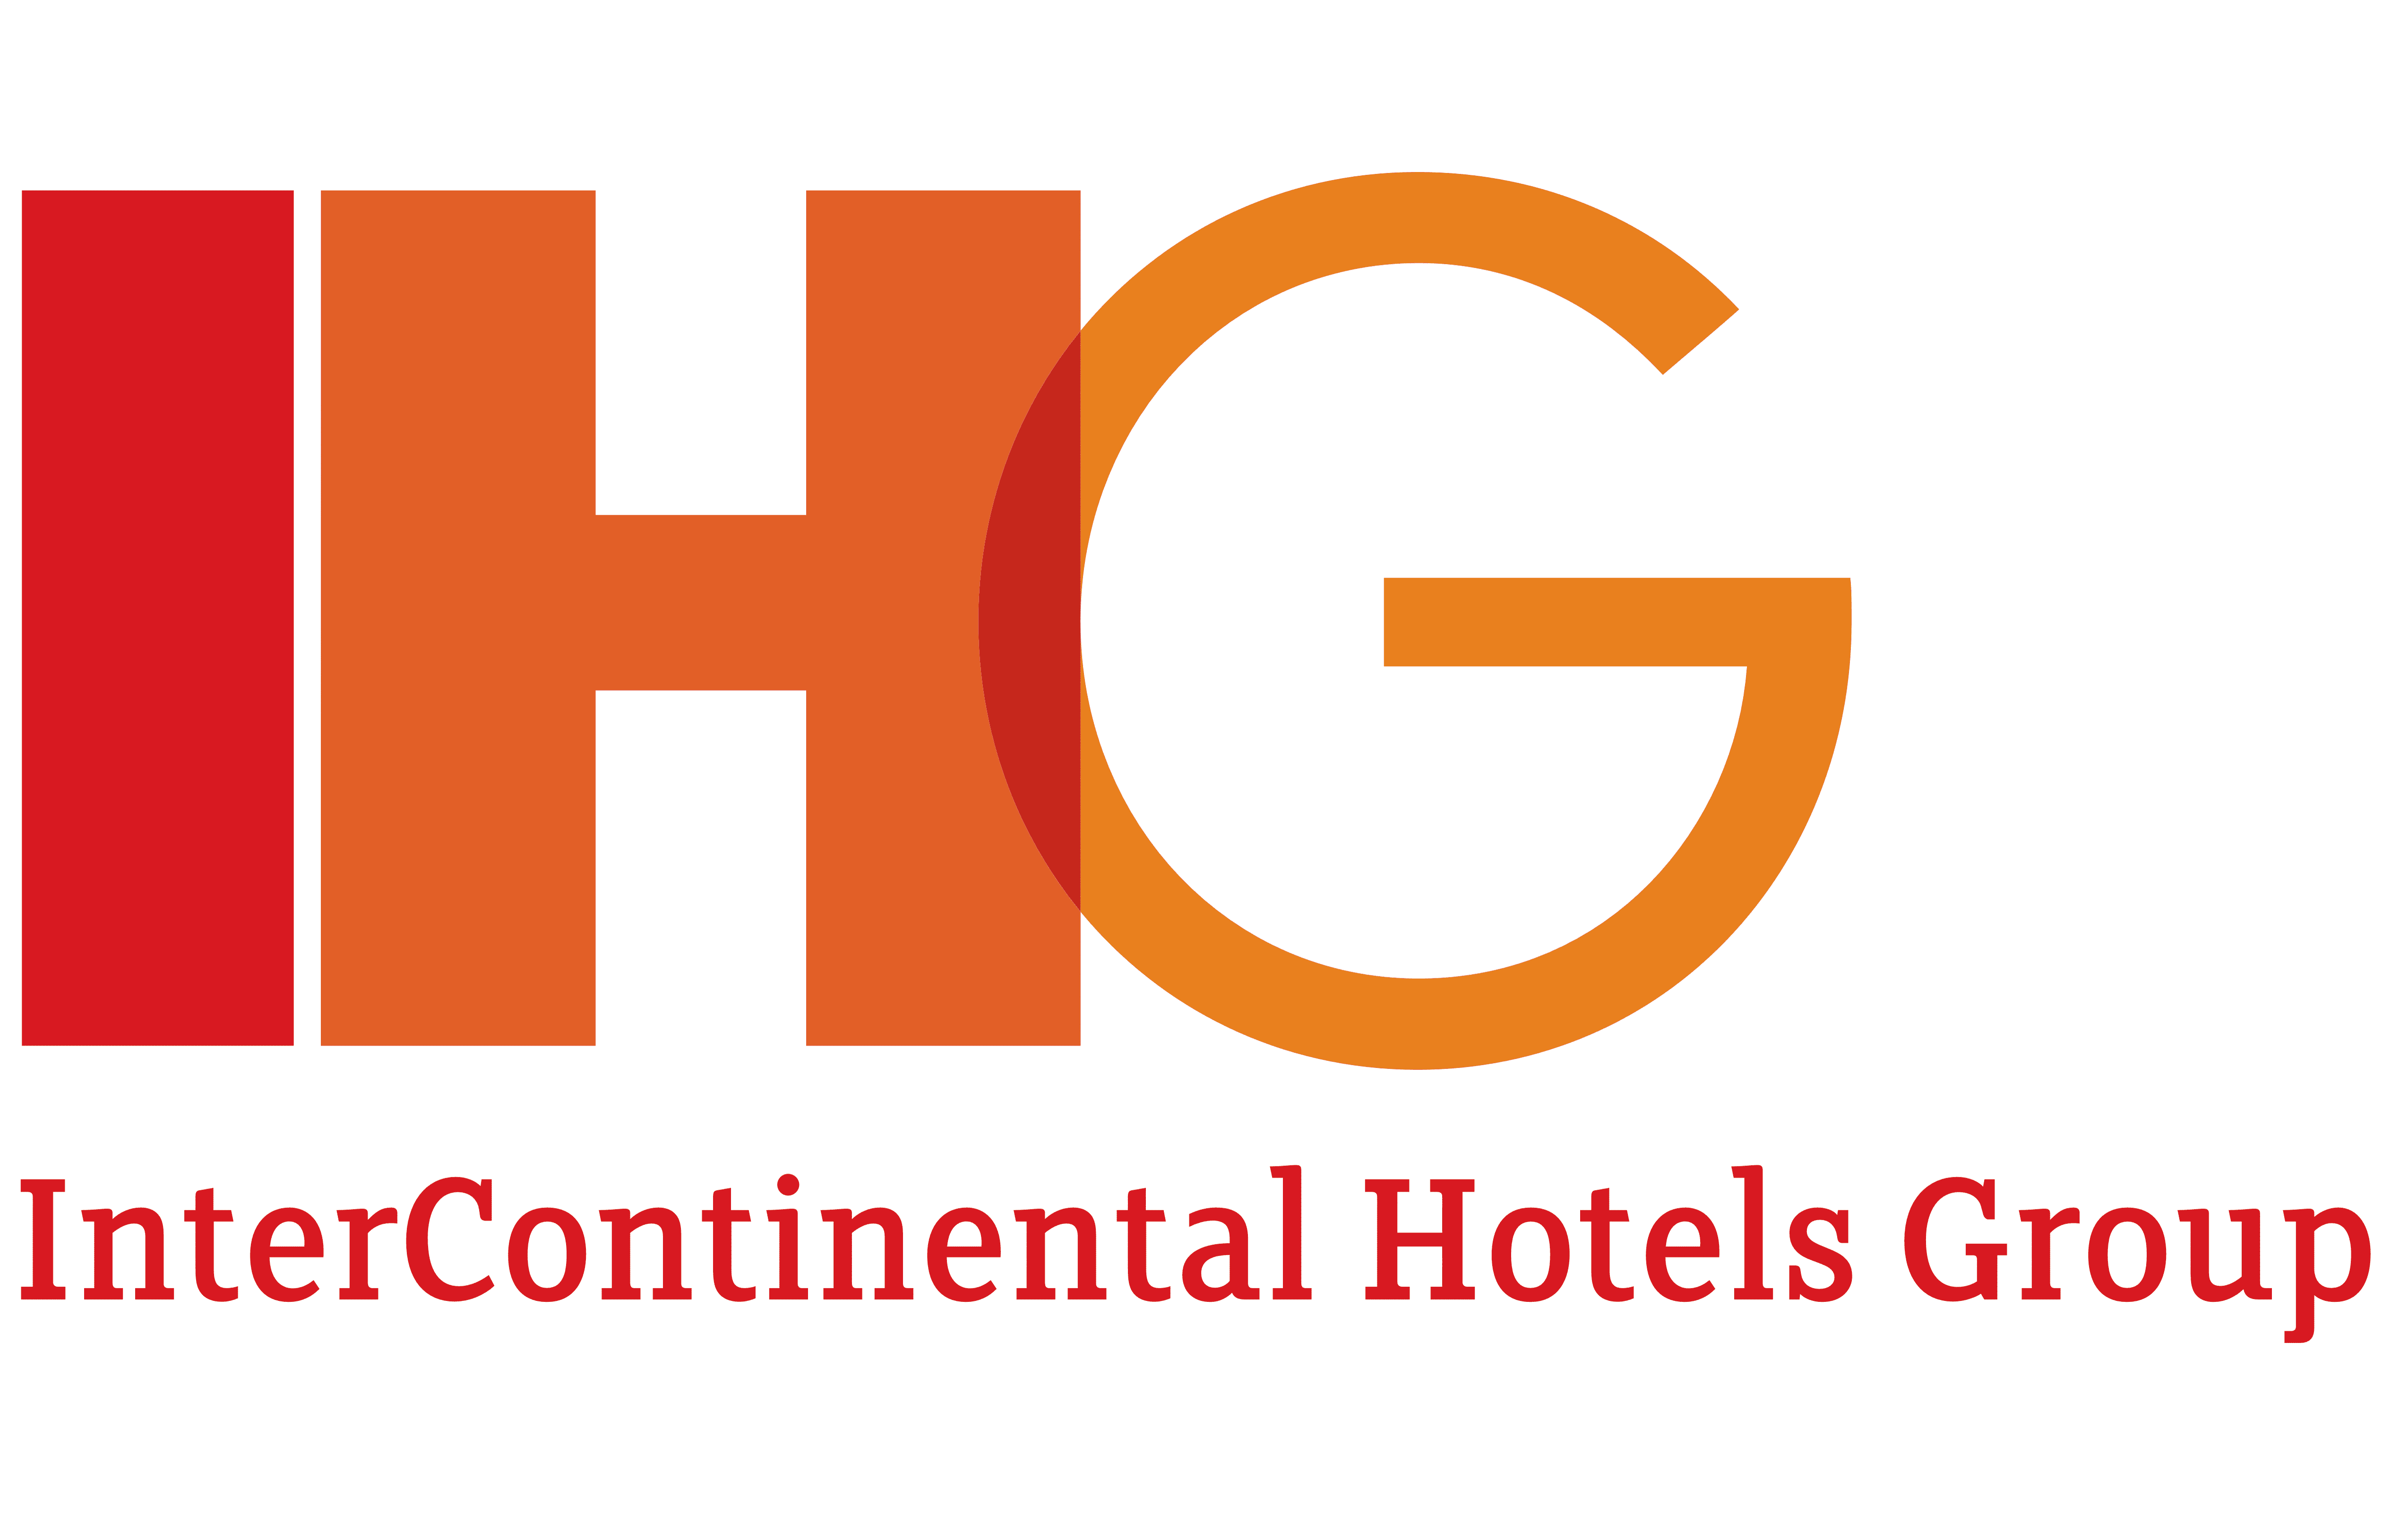 IHG Logo 2003 